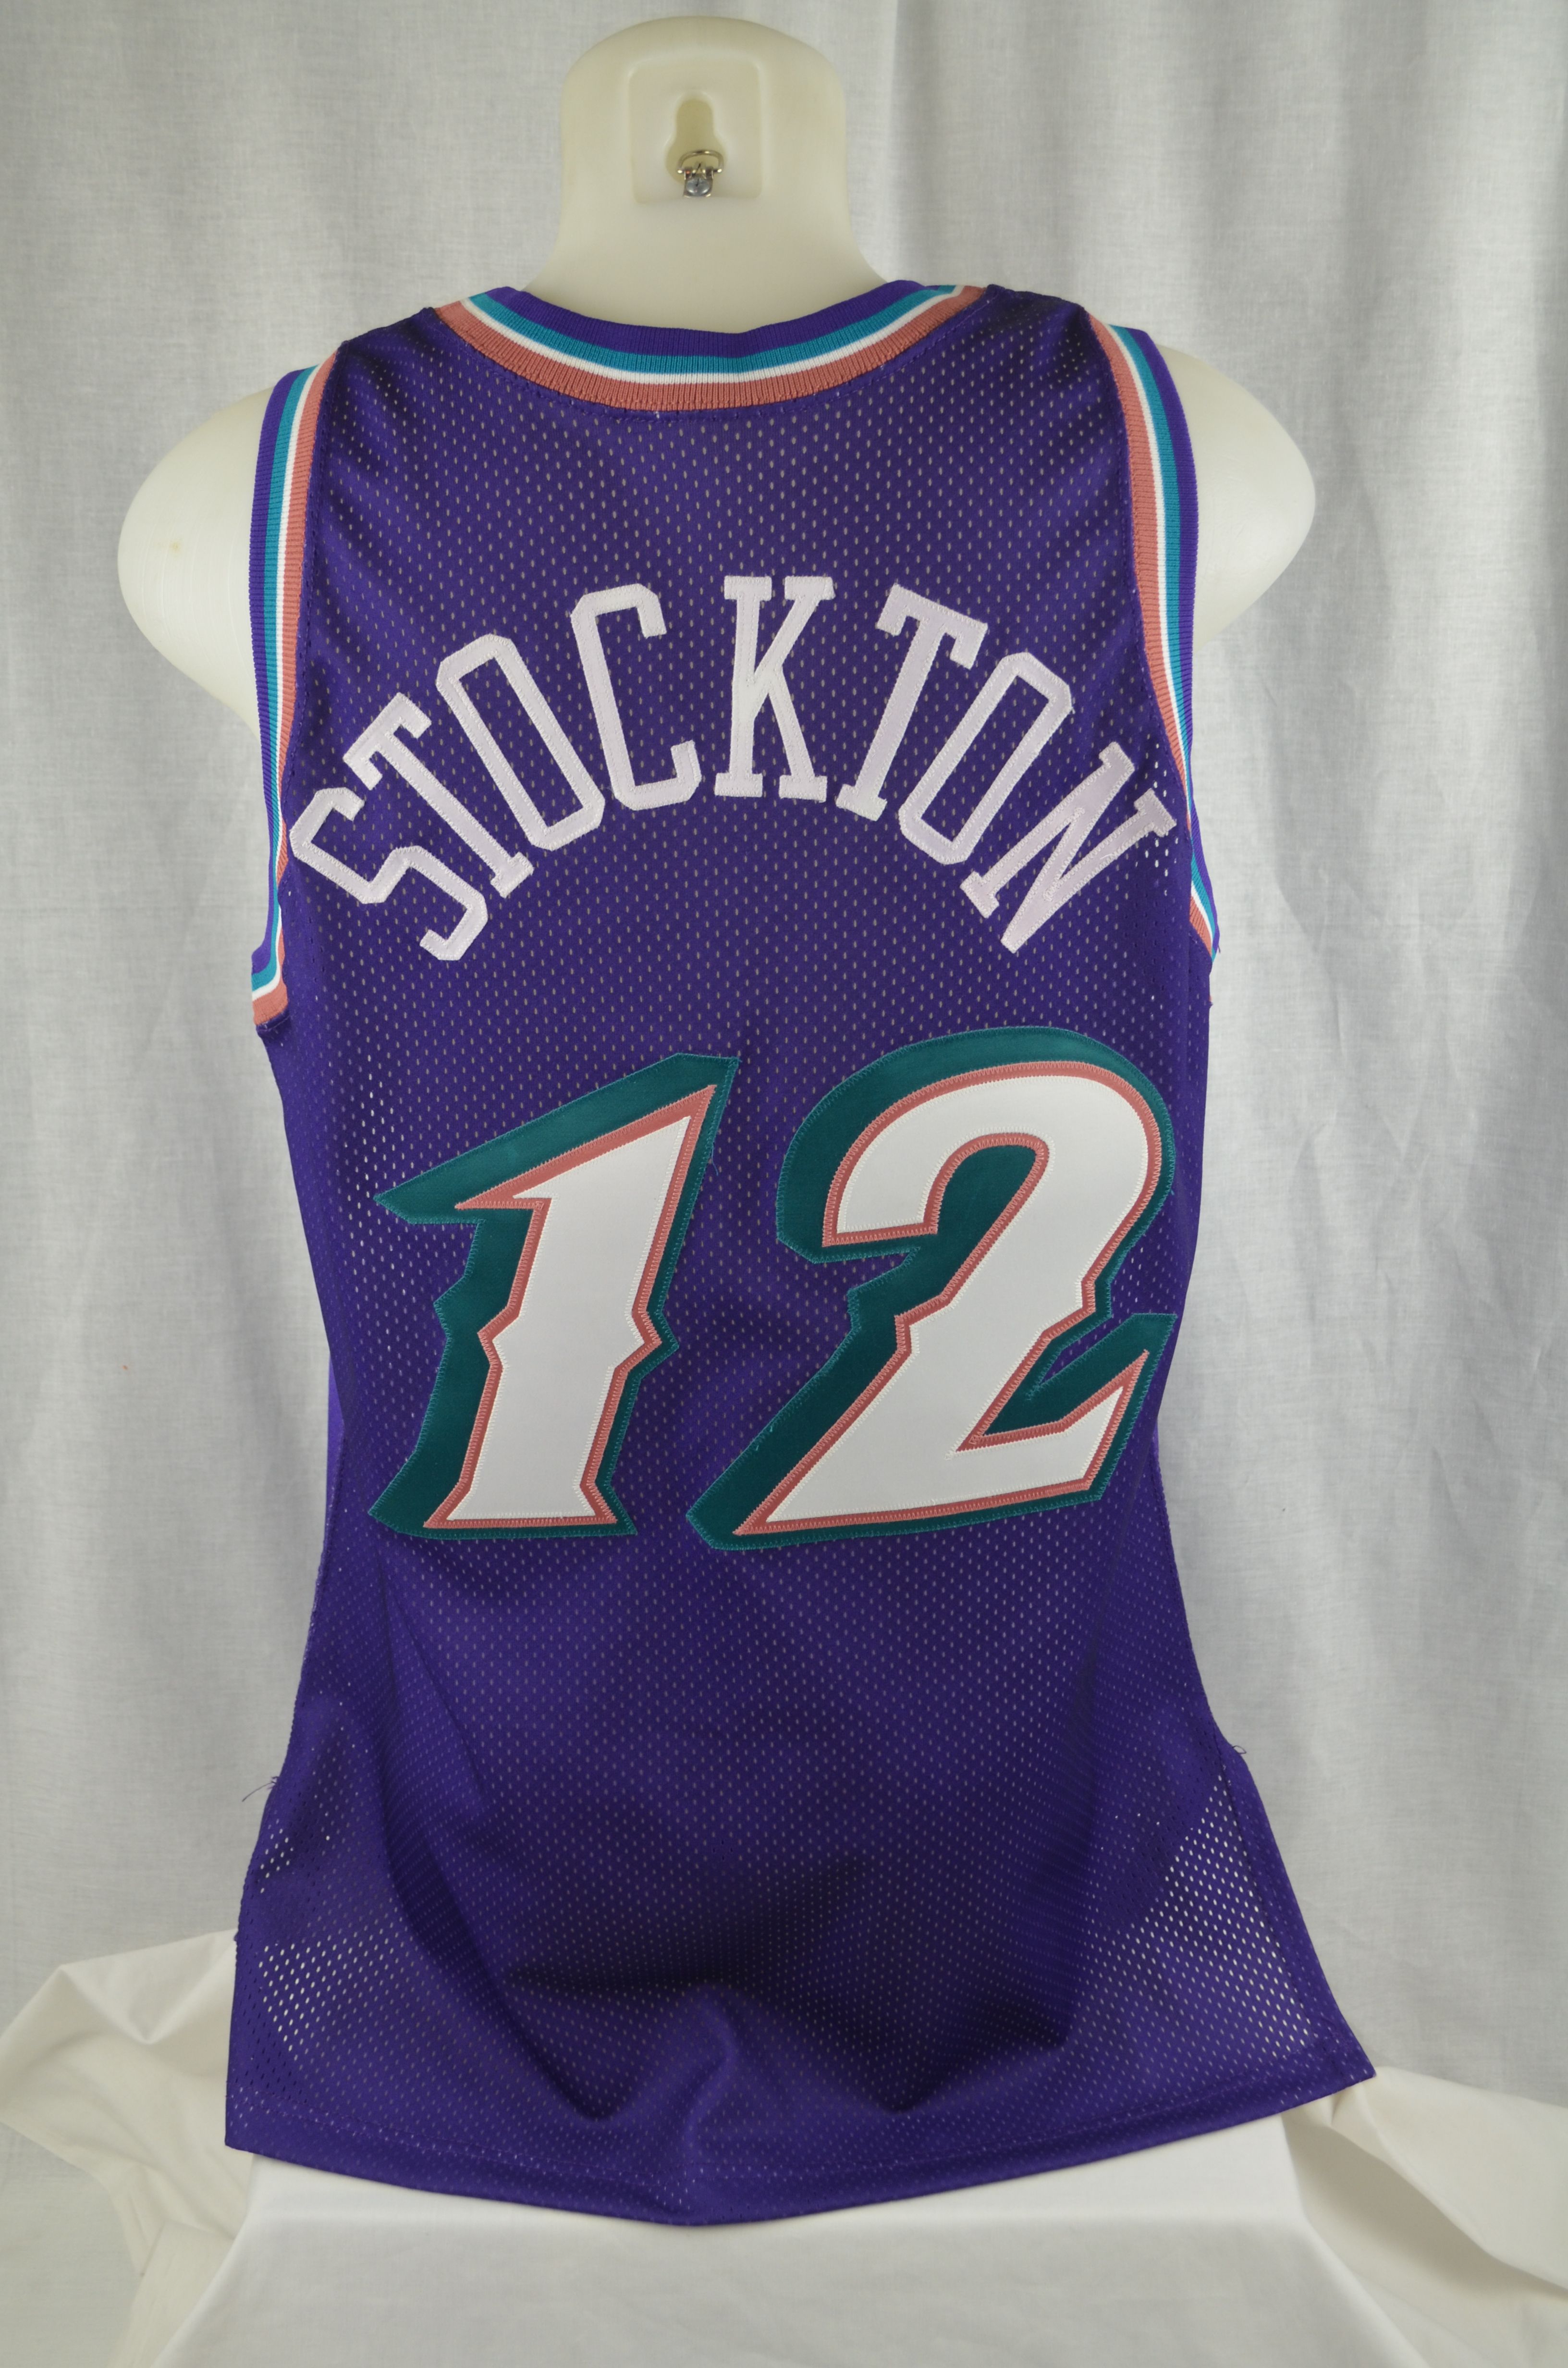 1997-98 John Stockton, Jazz Itm#N3672